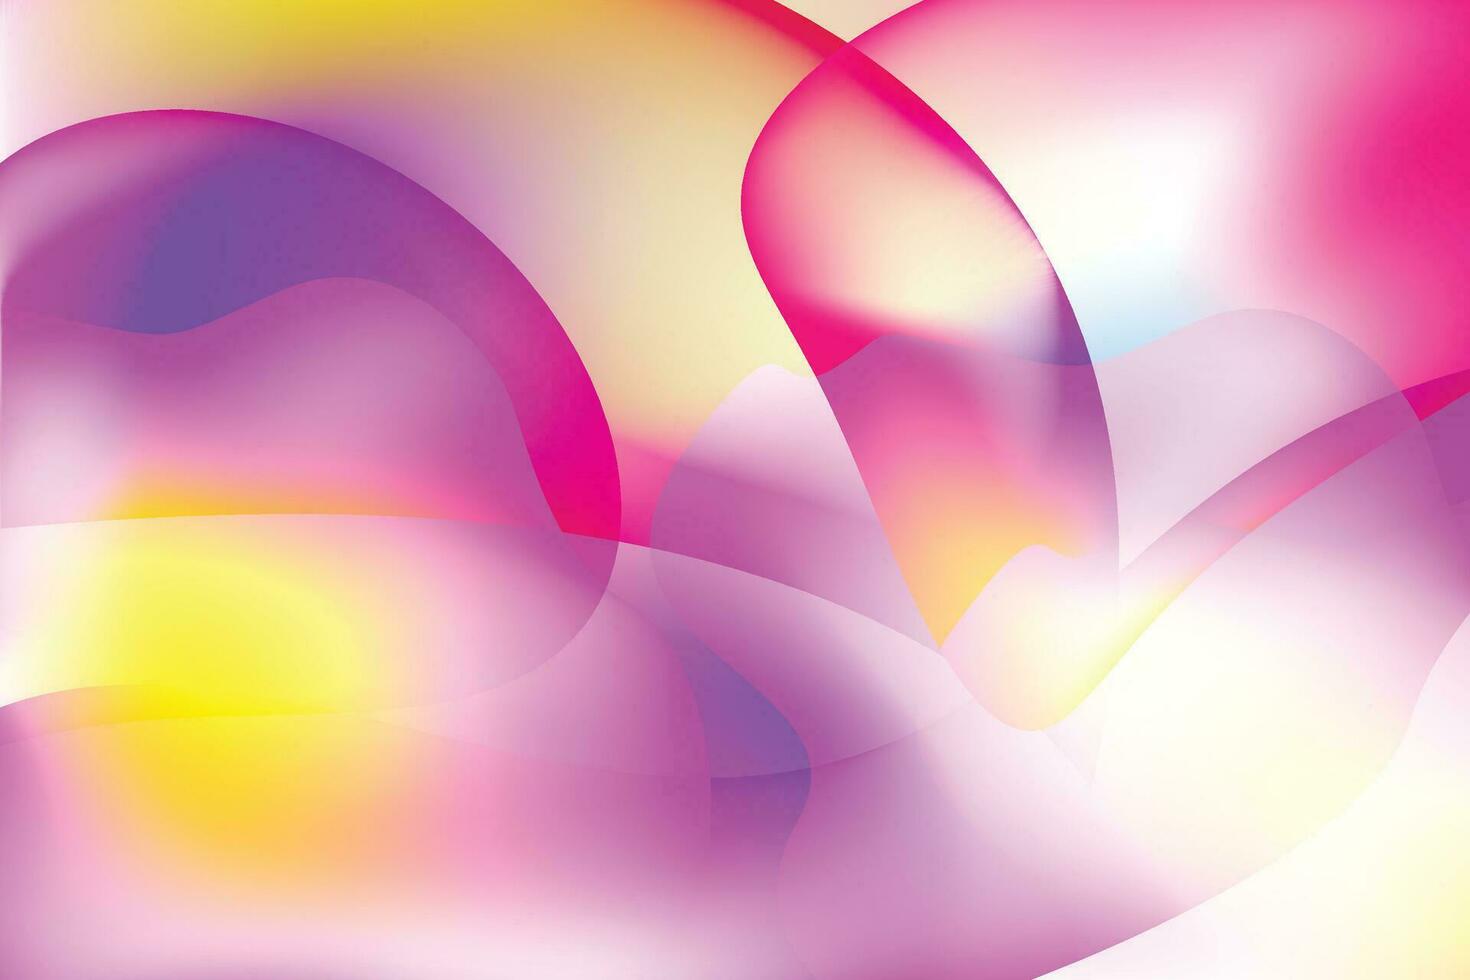 abstrakter futuristischer hintergrund in dunkelblau und rosa lila mit diagonalen streifenlinien und leuchtendem punkt. modernes und einfaches Bannerdesign. kann für Geschäftspräsentationen, Poster, Vorlagen verwendet werden. vektor